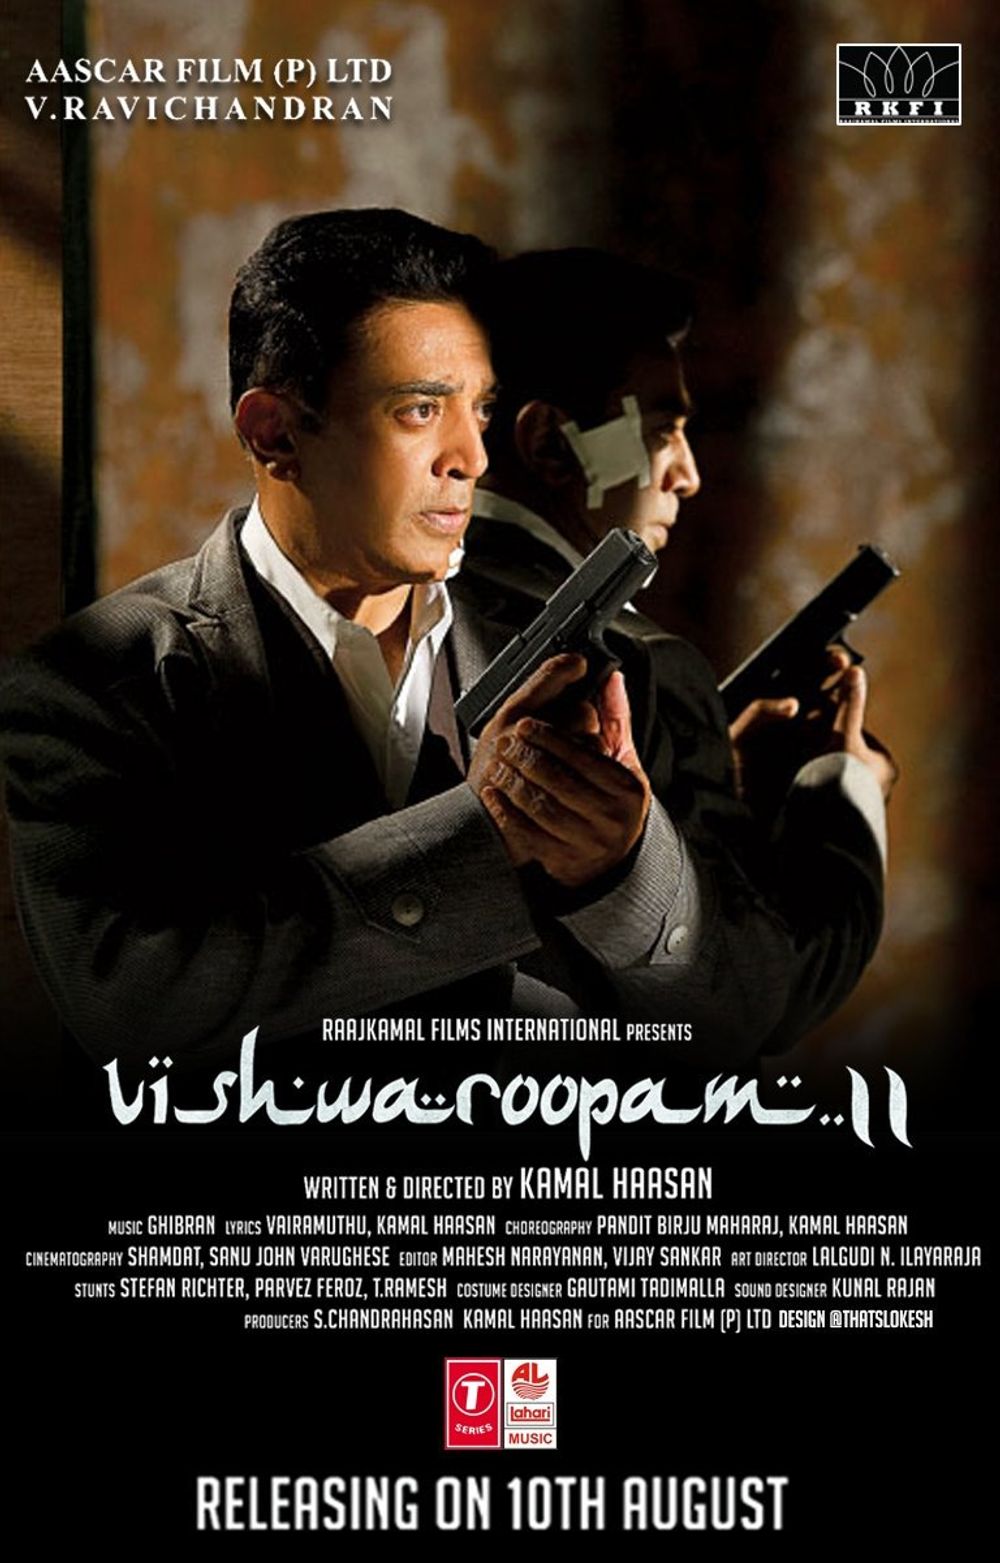 Kamal Haasan in Vishwaroopam release date poster